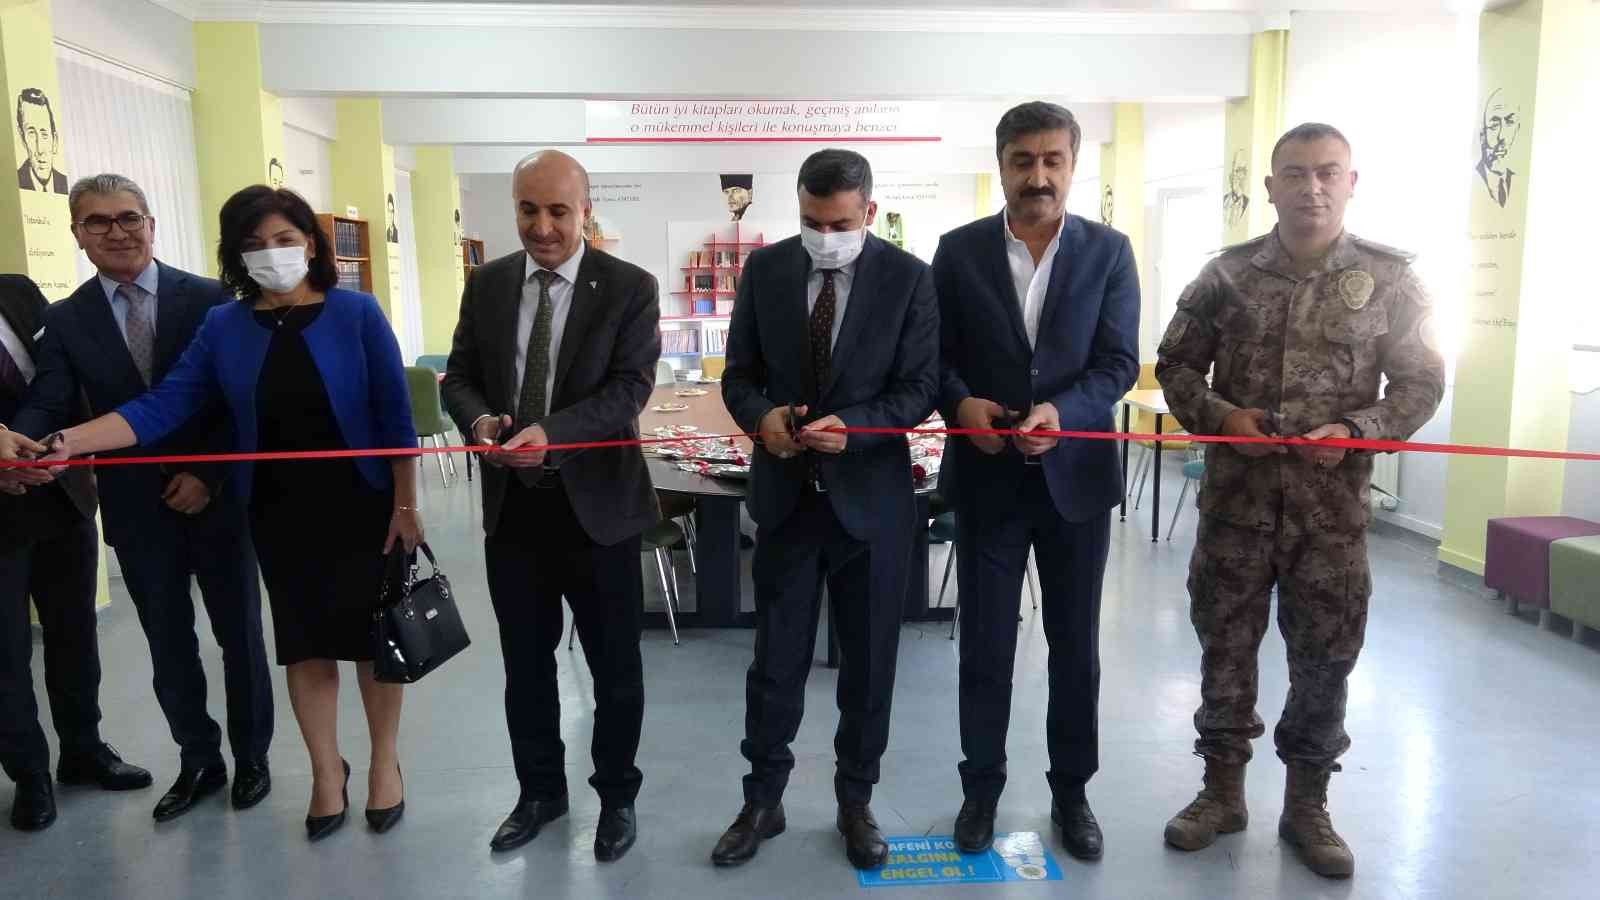 Mardin’de okullarda açılan kütüphanelere şehitlerin isimleri verildi #mardin